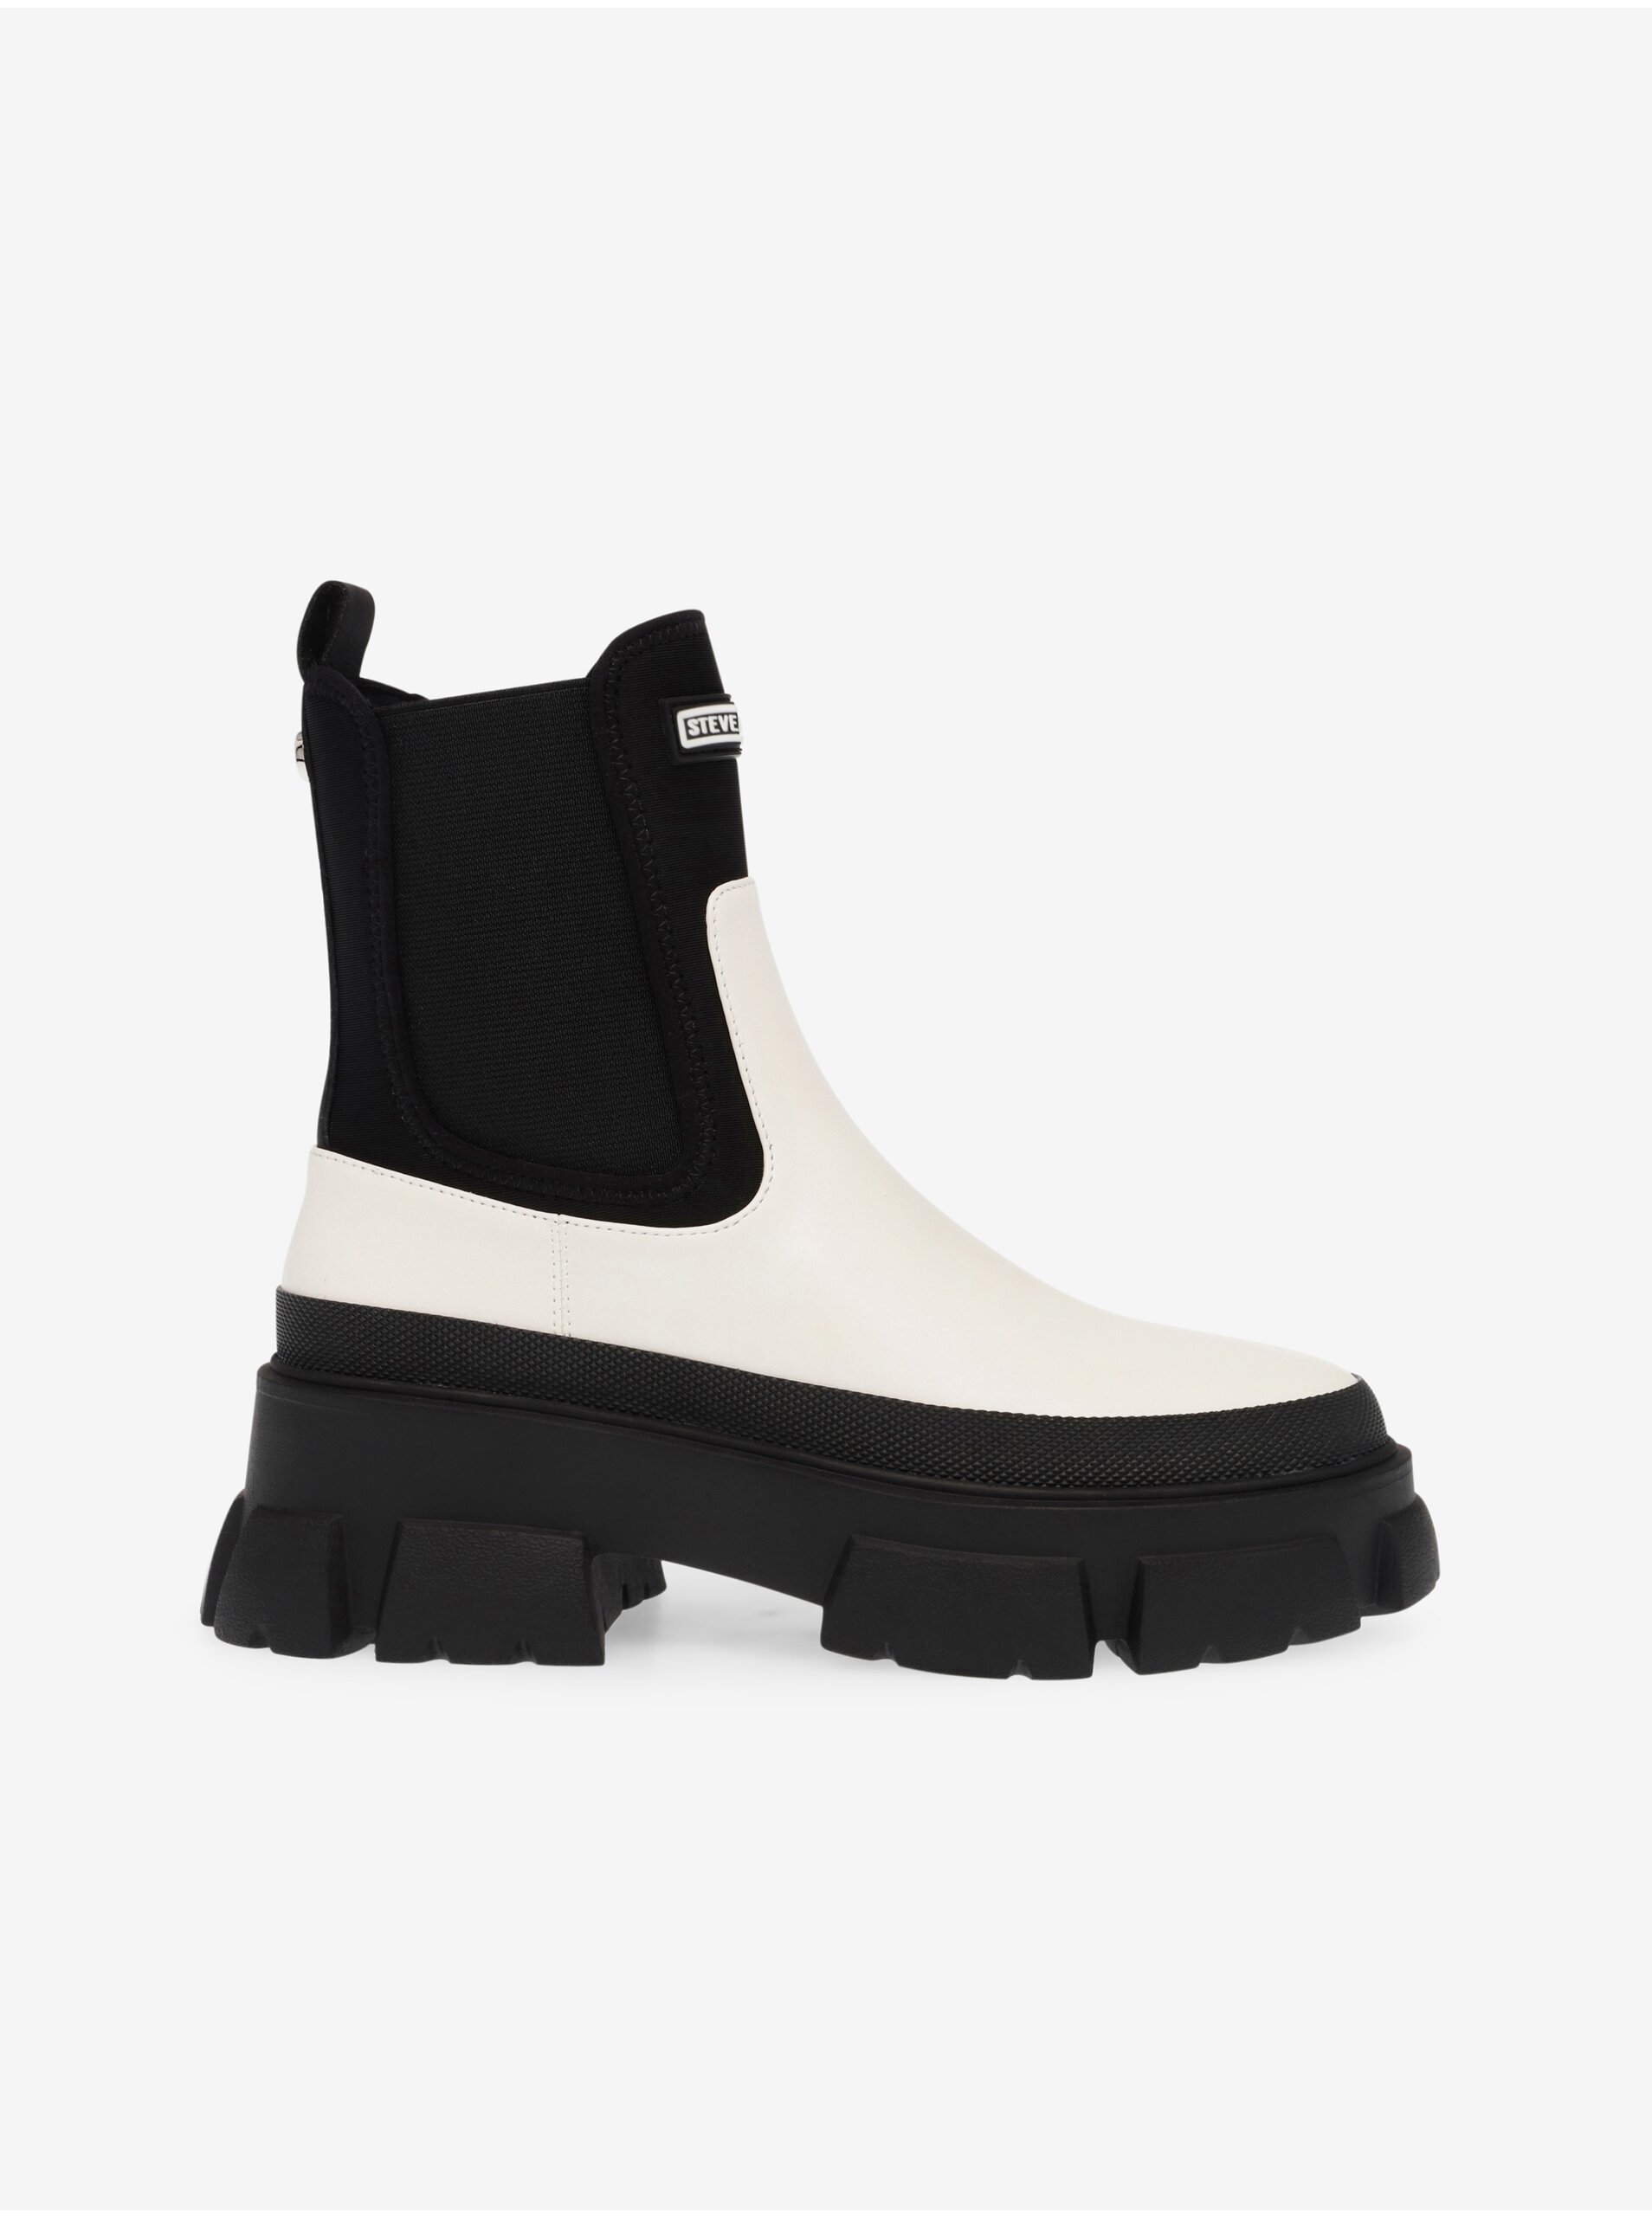 E-shop Černo-bílé dámské kožené chelsea boty Steve Madden